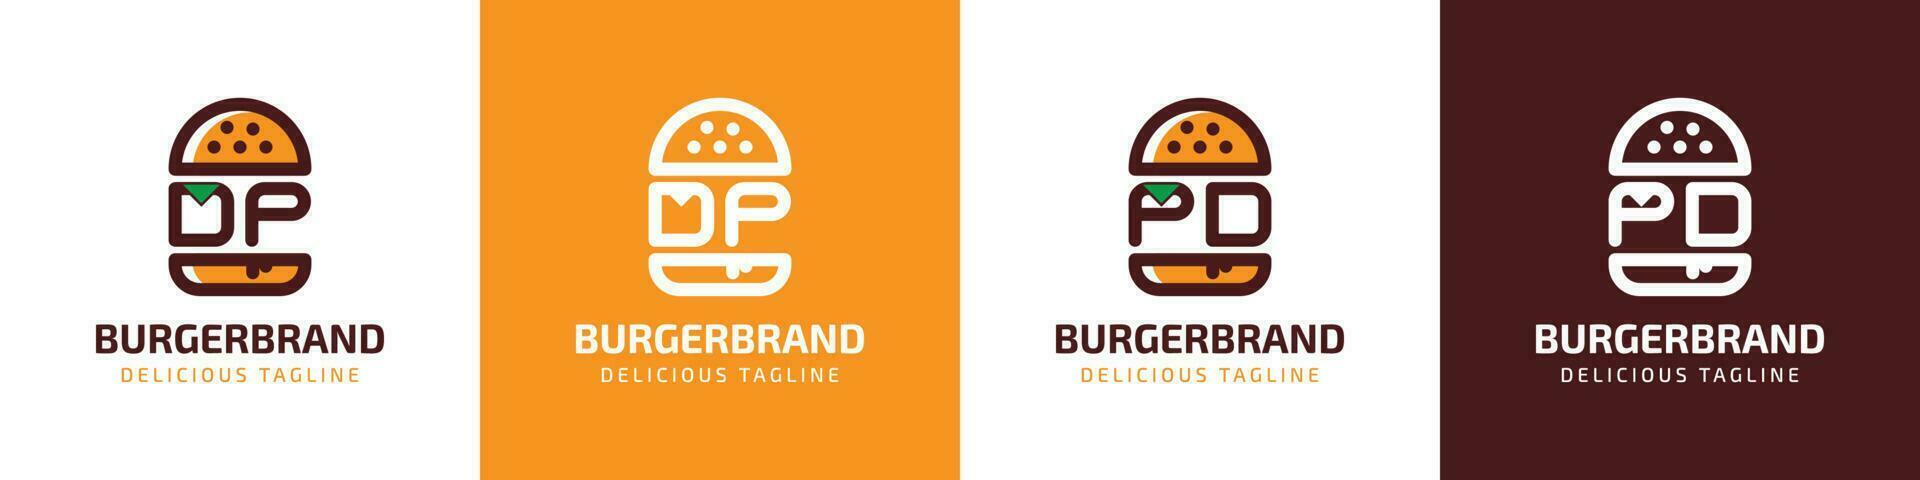 letra dp y pd hamburguesa logo, adecuado para ninguna negocio relacionado a hamburguesa con dp o pd iniciales. vector